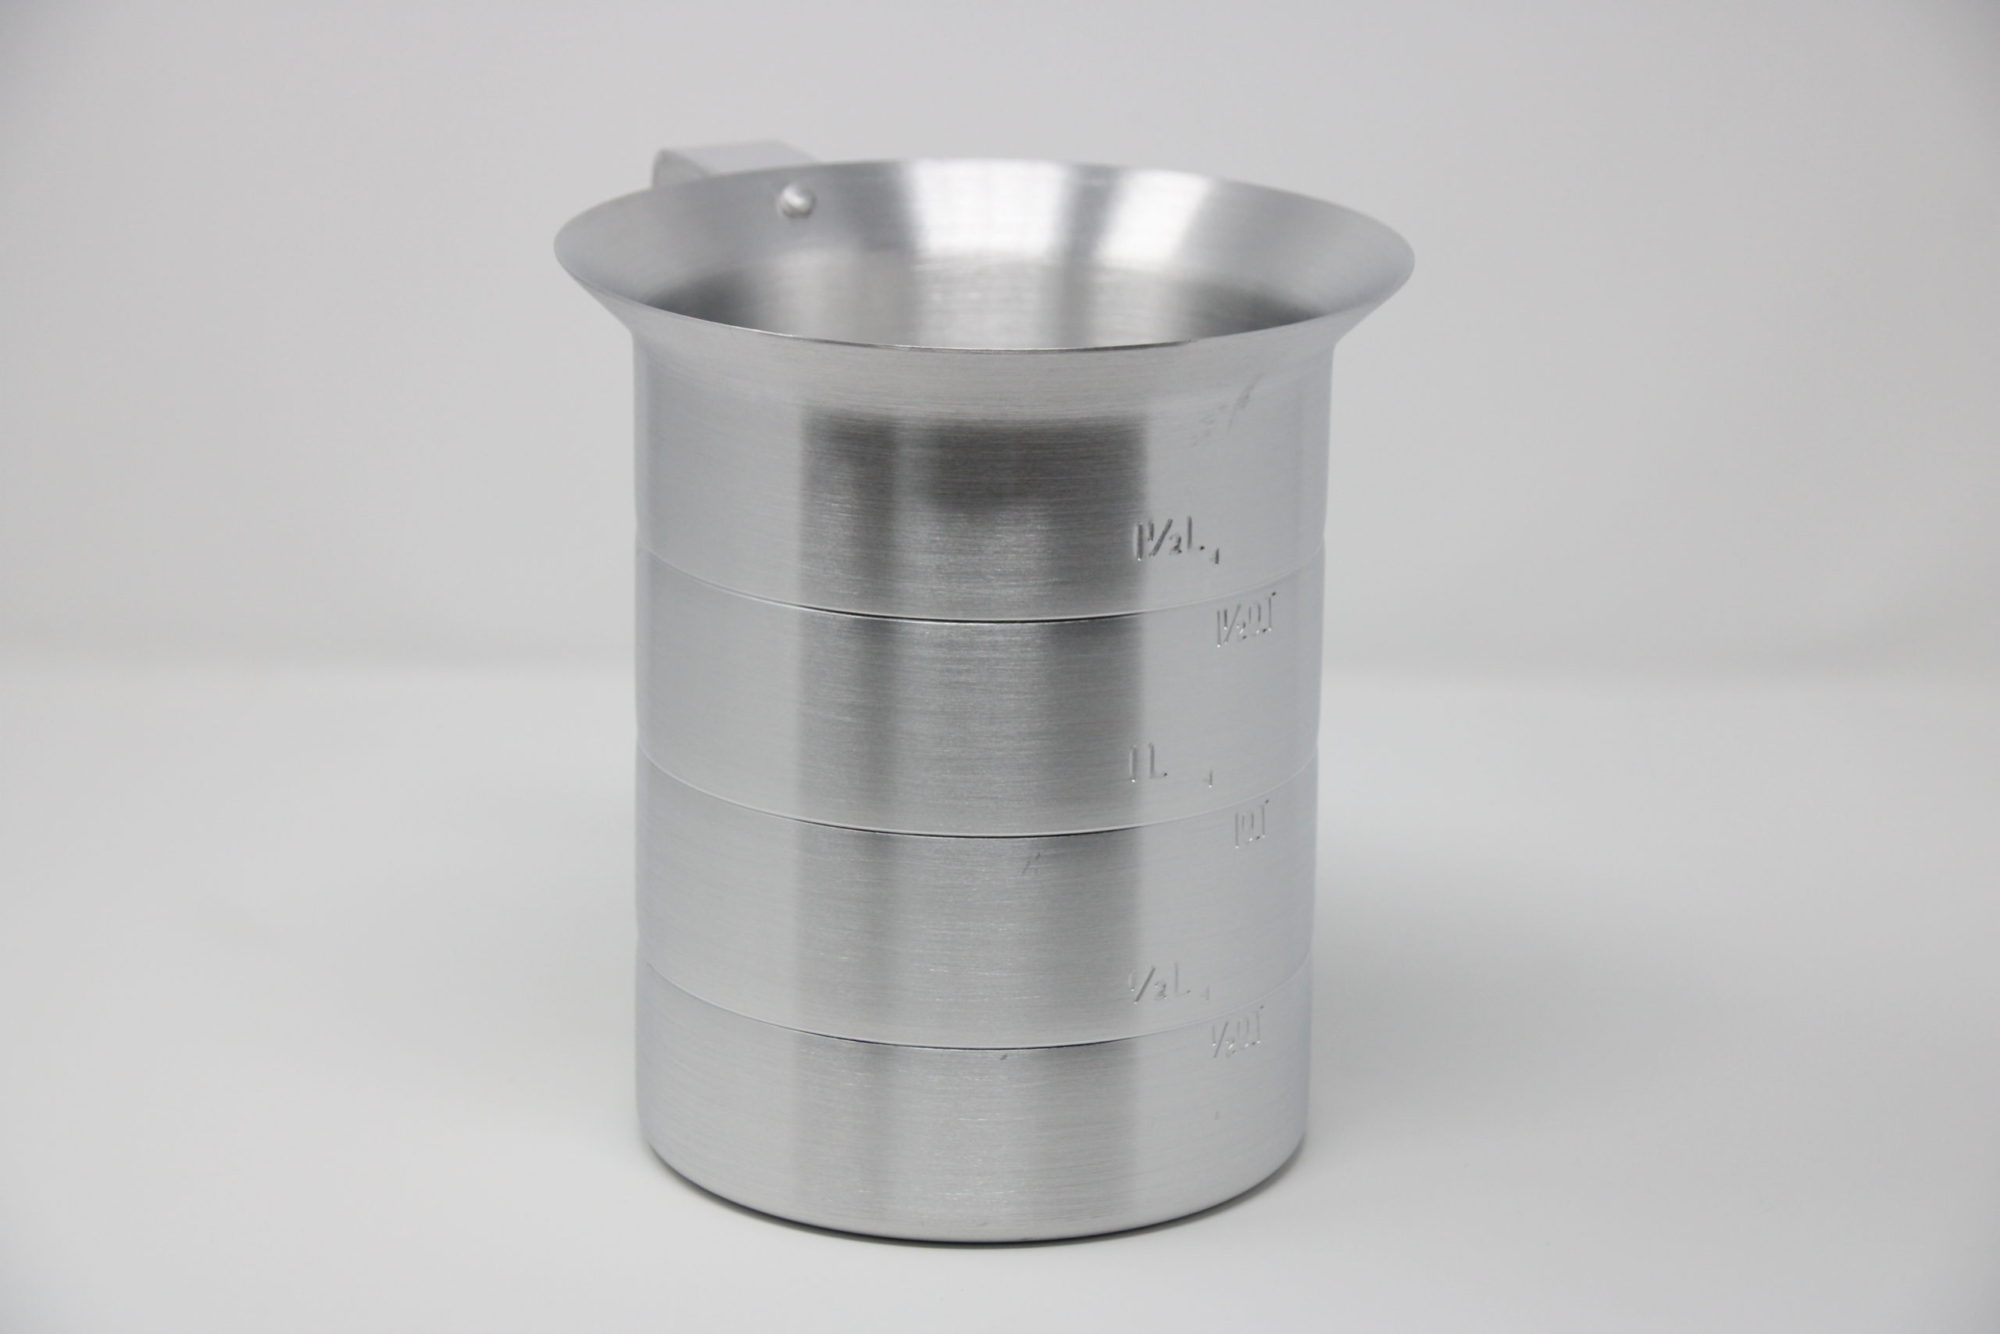 Royal Aluminium Measuring Cup 1 1/2 L, 1 1/2 Qt - ROY MEAS 2